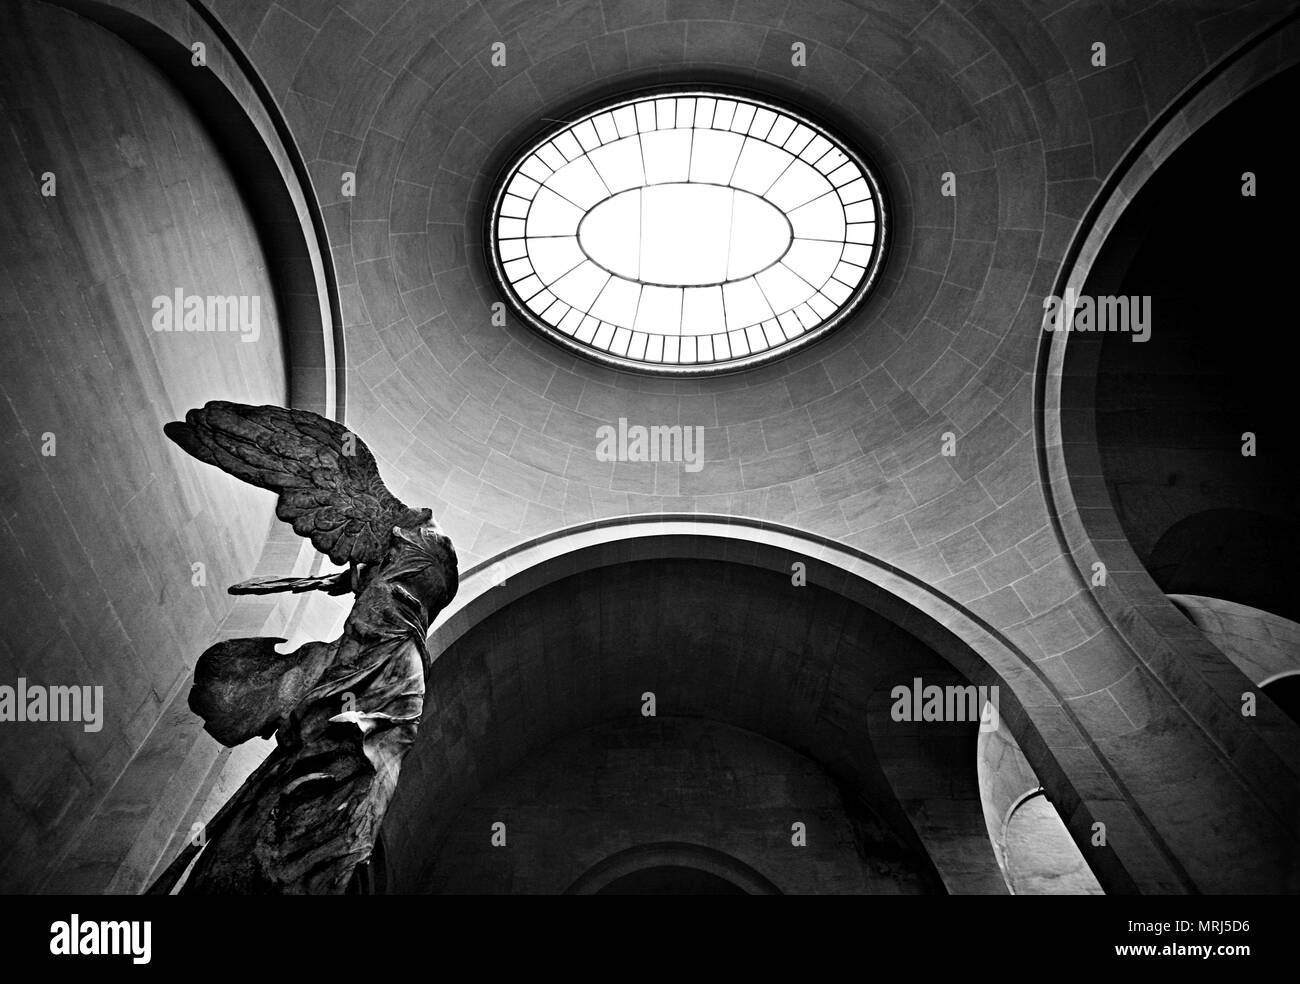 Victoire de Samothrace, Louvre, Paris, France Stock Photo